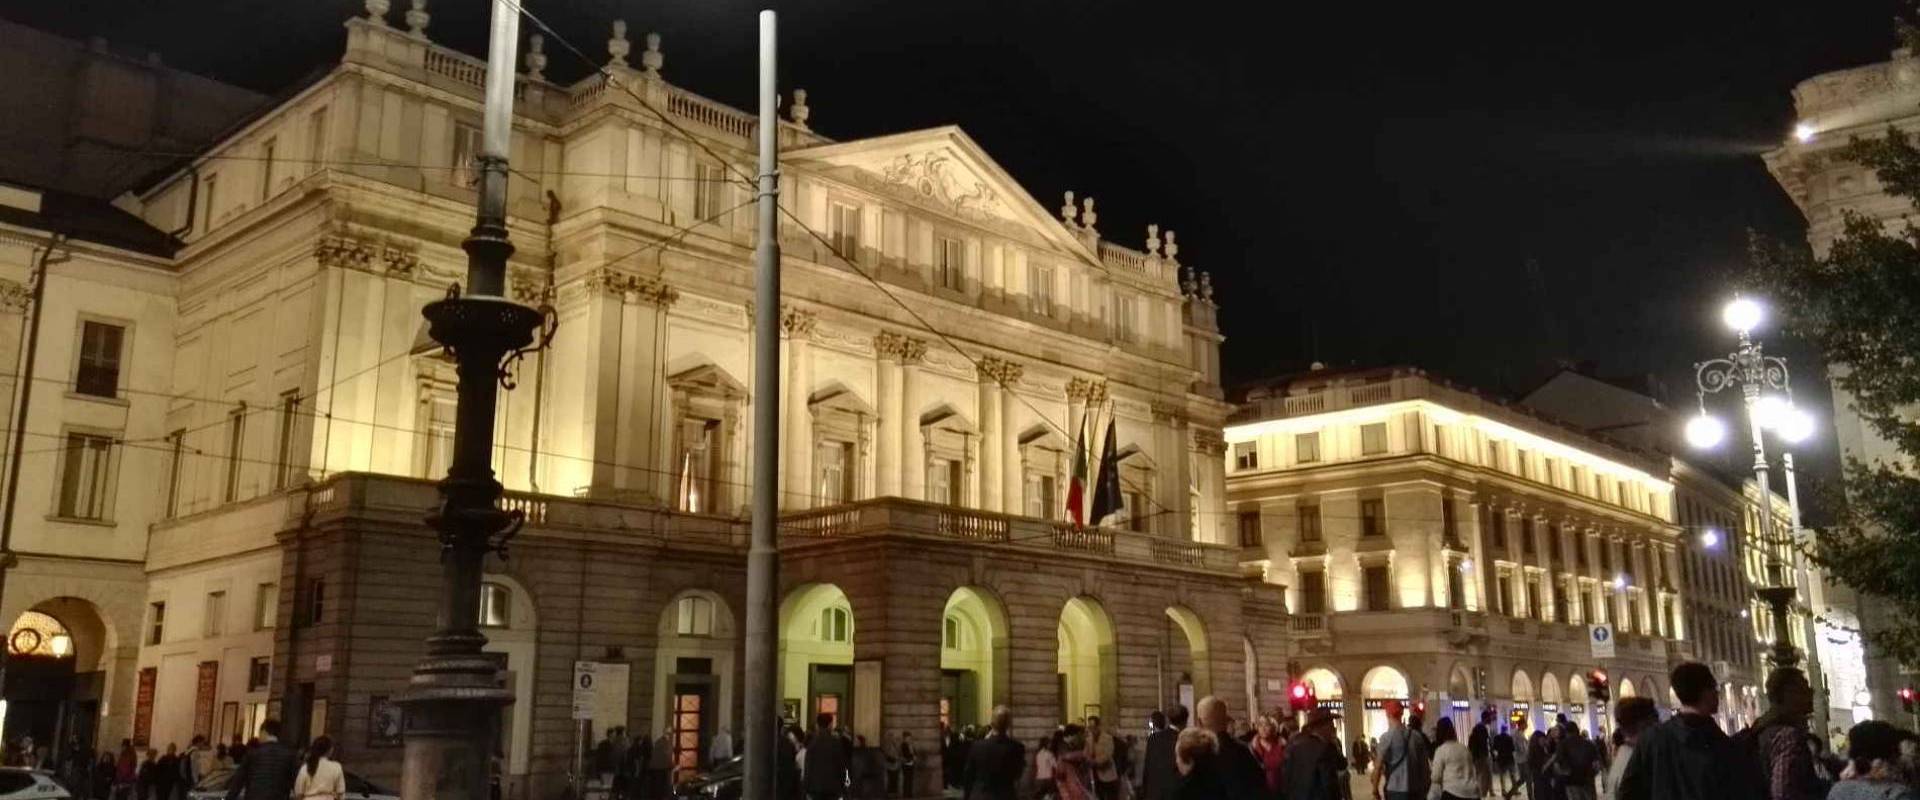 <span>Teatro alla Scala</span><span>Tutto pronto per la nuova stagione!</span>